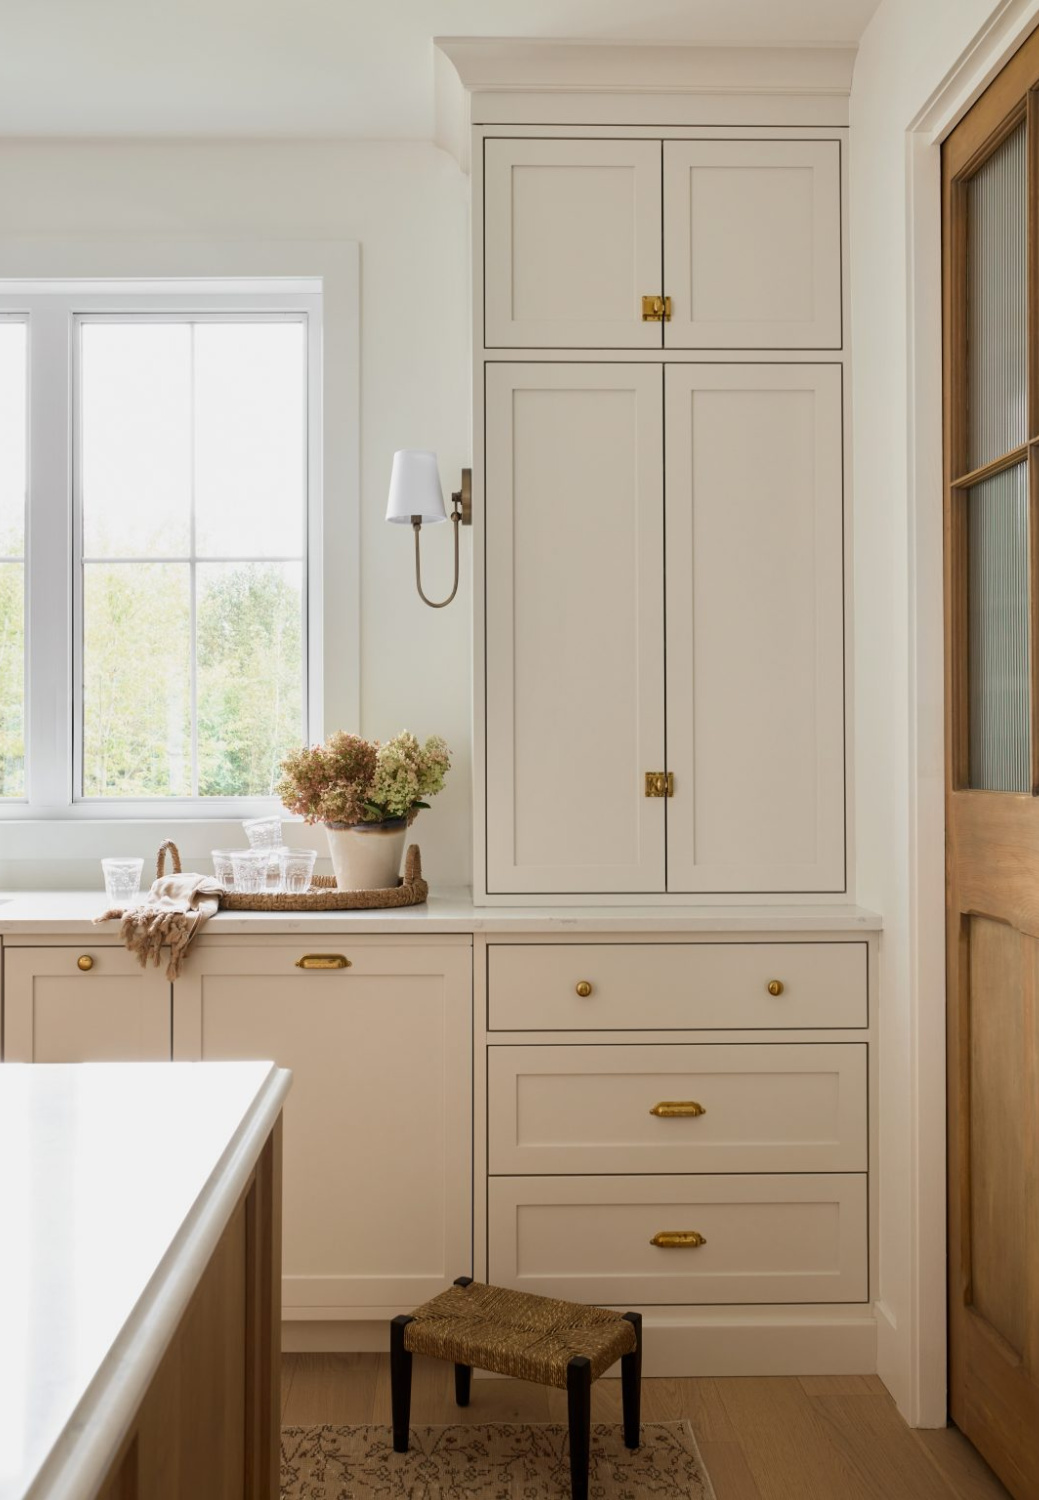 Benjamin Moore PALE OAK on kitchen cabinets in a gorgeous warm, European inspired luxe kitchen by AKB Design. #benjaminmoorepaleoak #warmwhitekitchen #whitekitchencabinetcolor